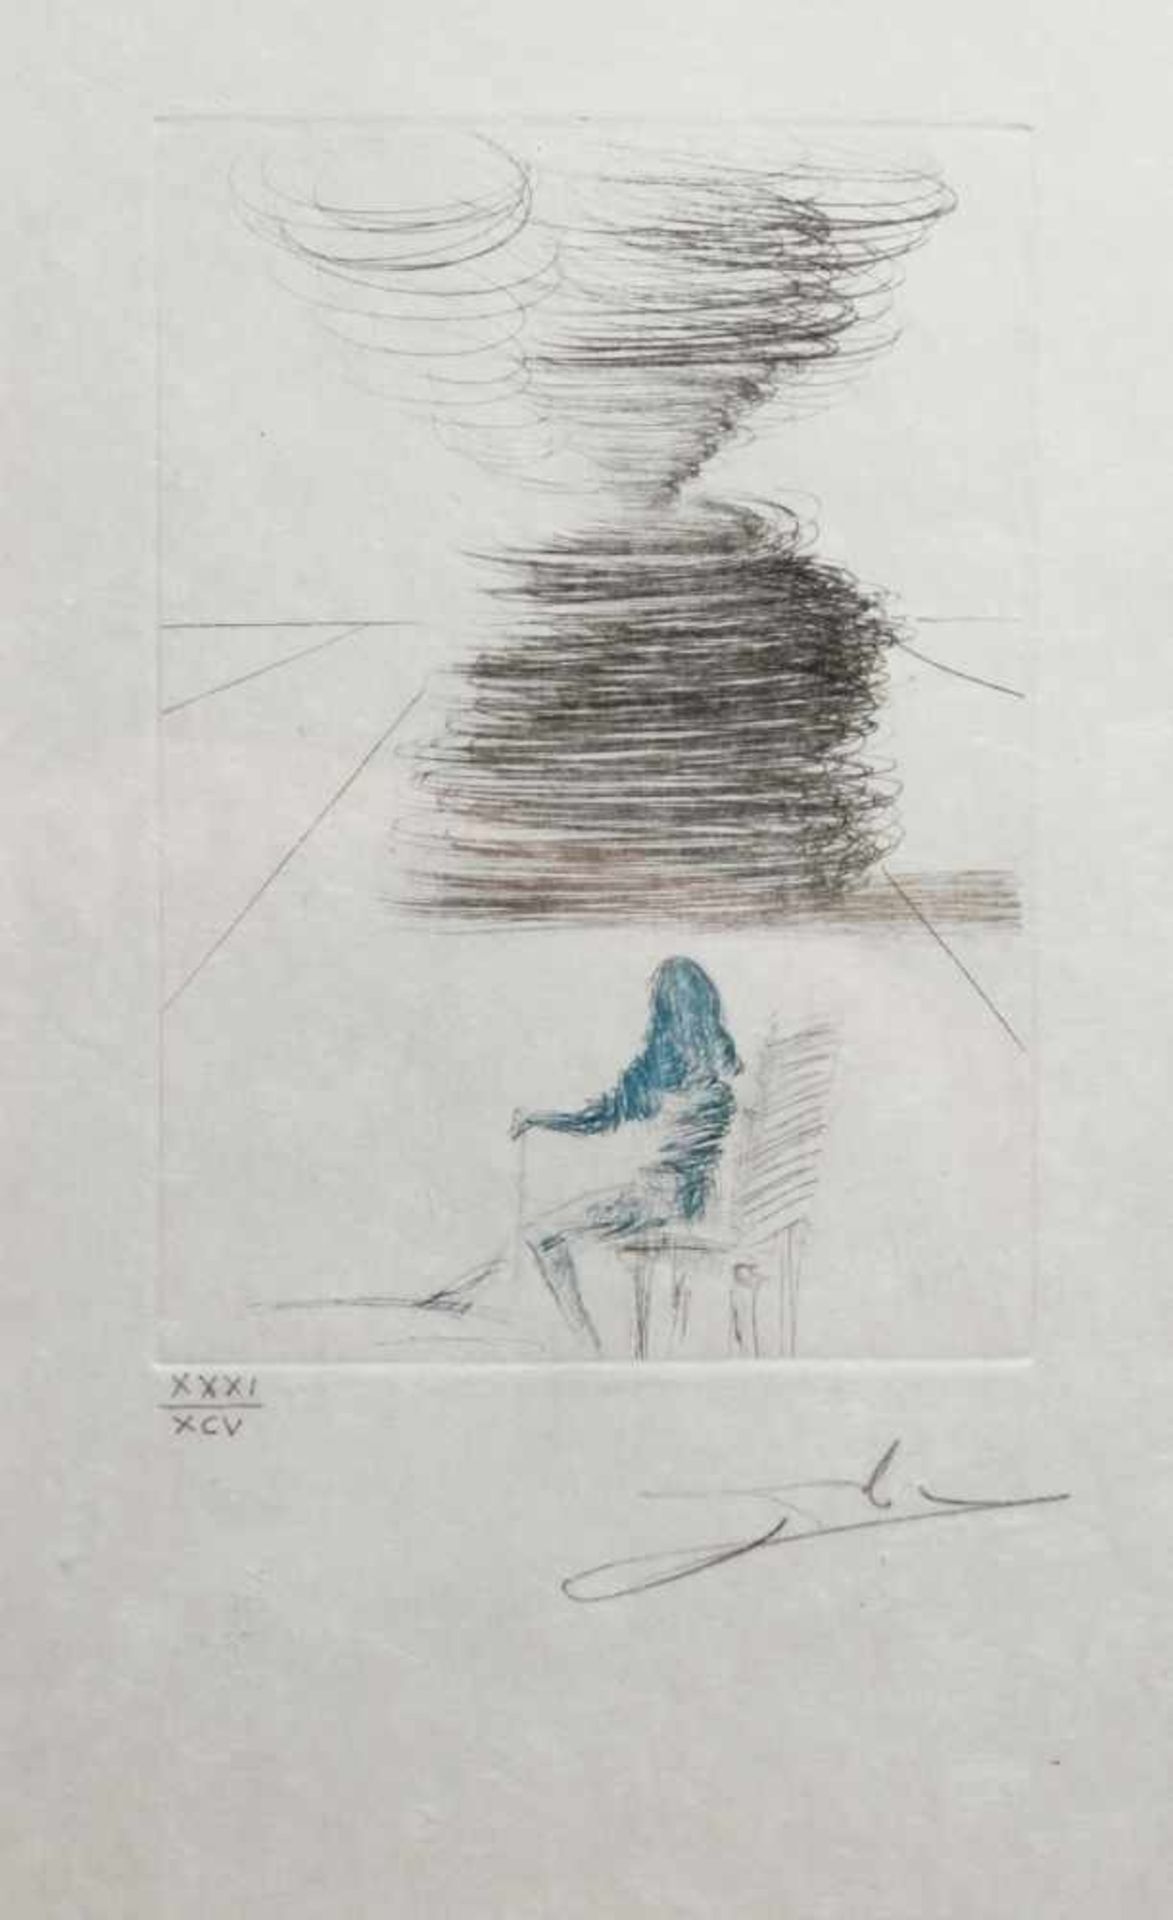 Dali, Salvadore, Figueras 1904 - 1989 ebenda. "Surrealistische Darstellung", Radierung,handsign.,